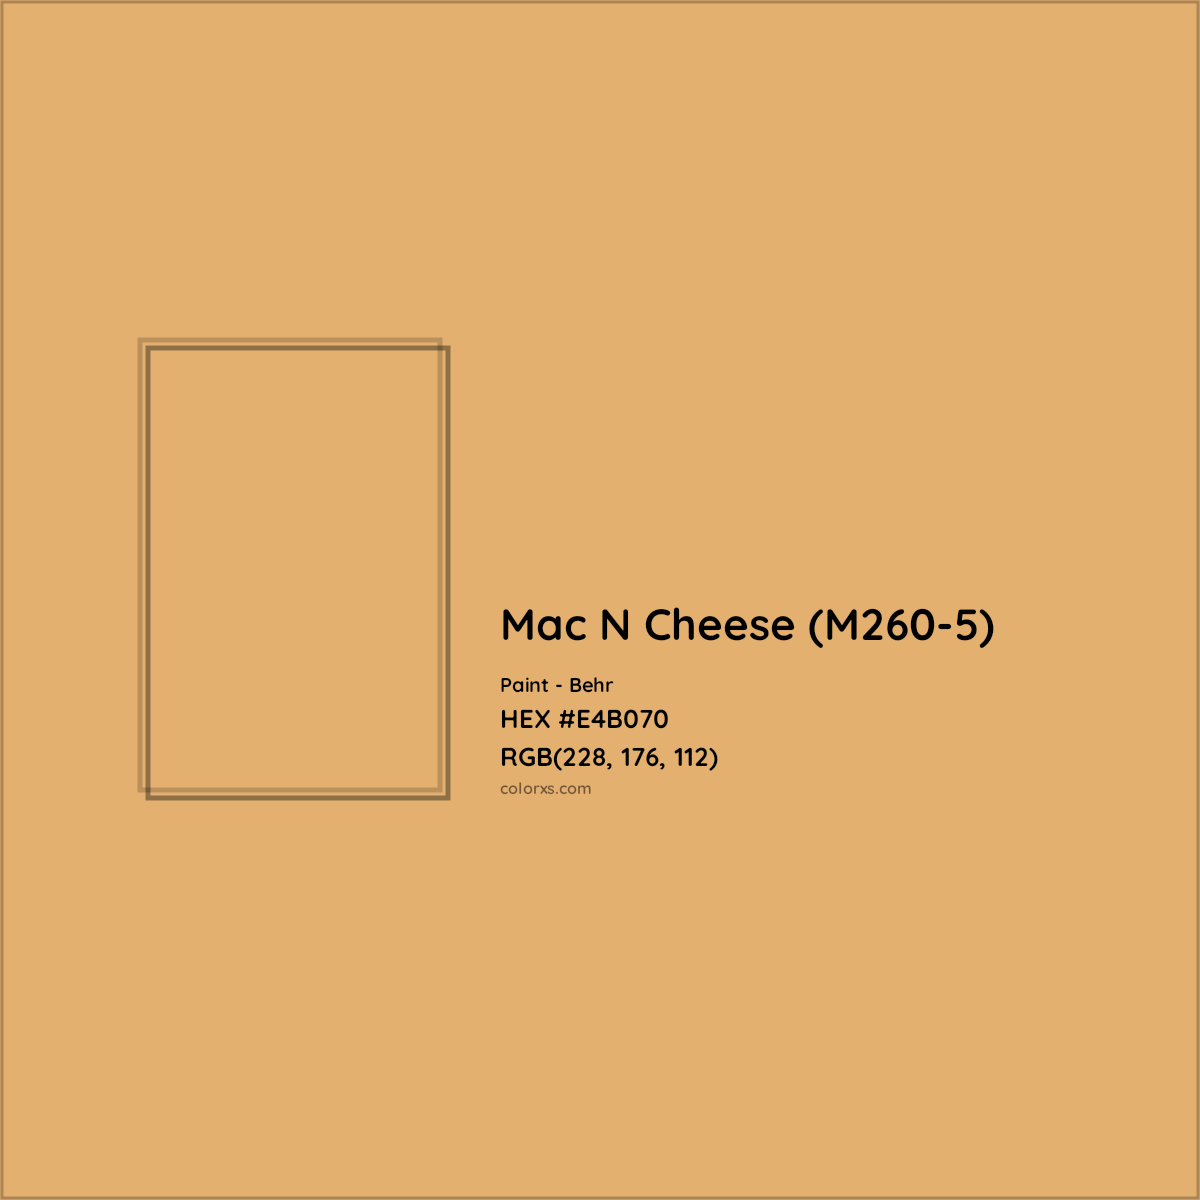 HEX #E4B070 Mac N Cheese (M260-5) Paint Behr - Color Code